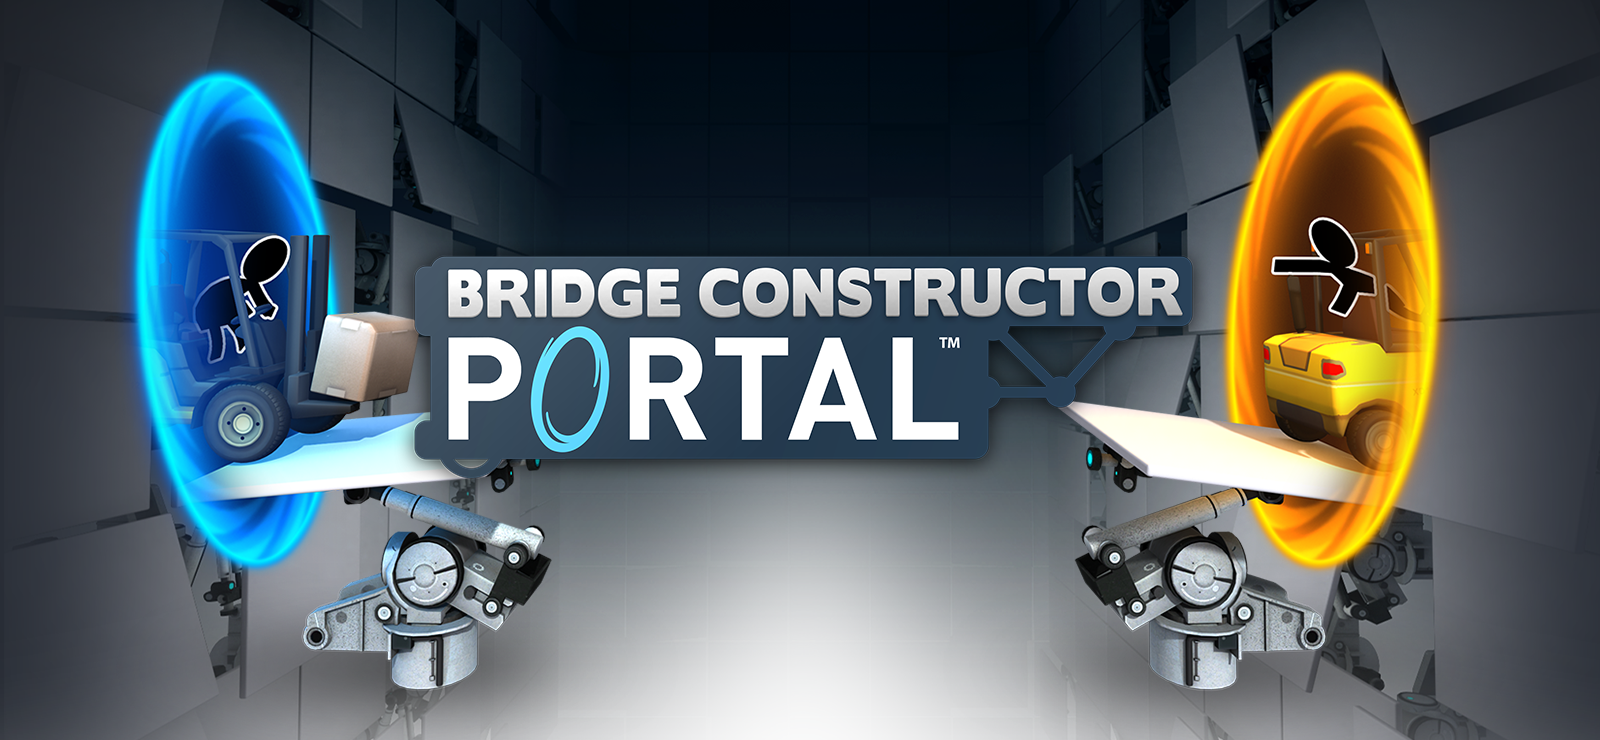 Bridge Constructor Portal - Portal Proficiency